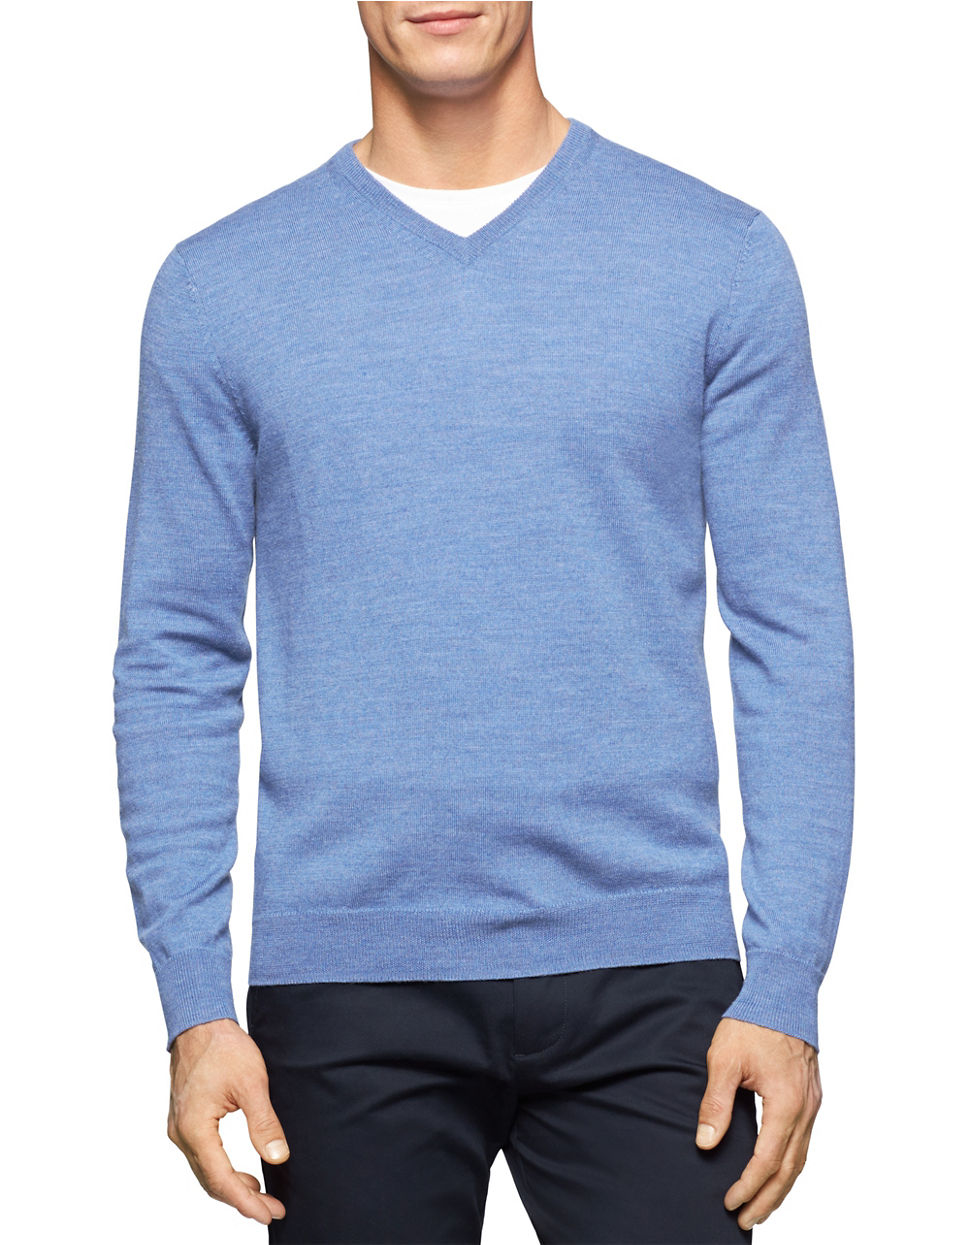 Lyst - Calvin Klein Merino Wool V-neck Sweater in Blue for Men